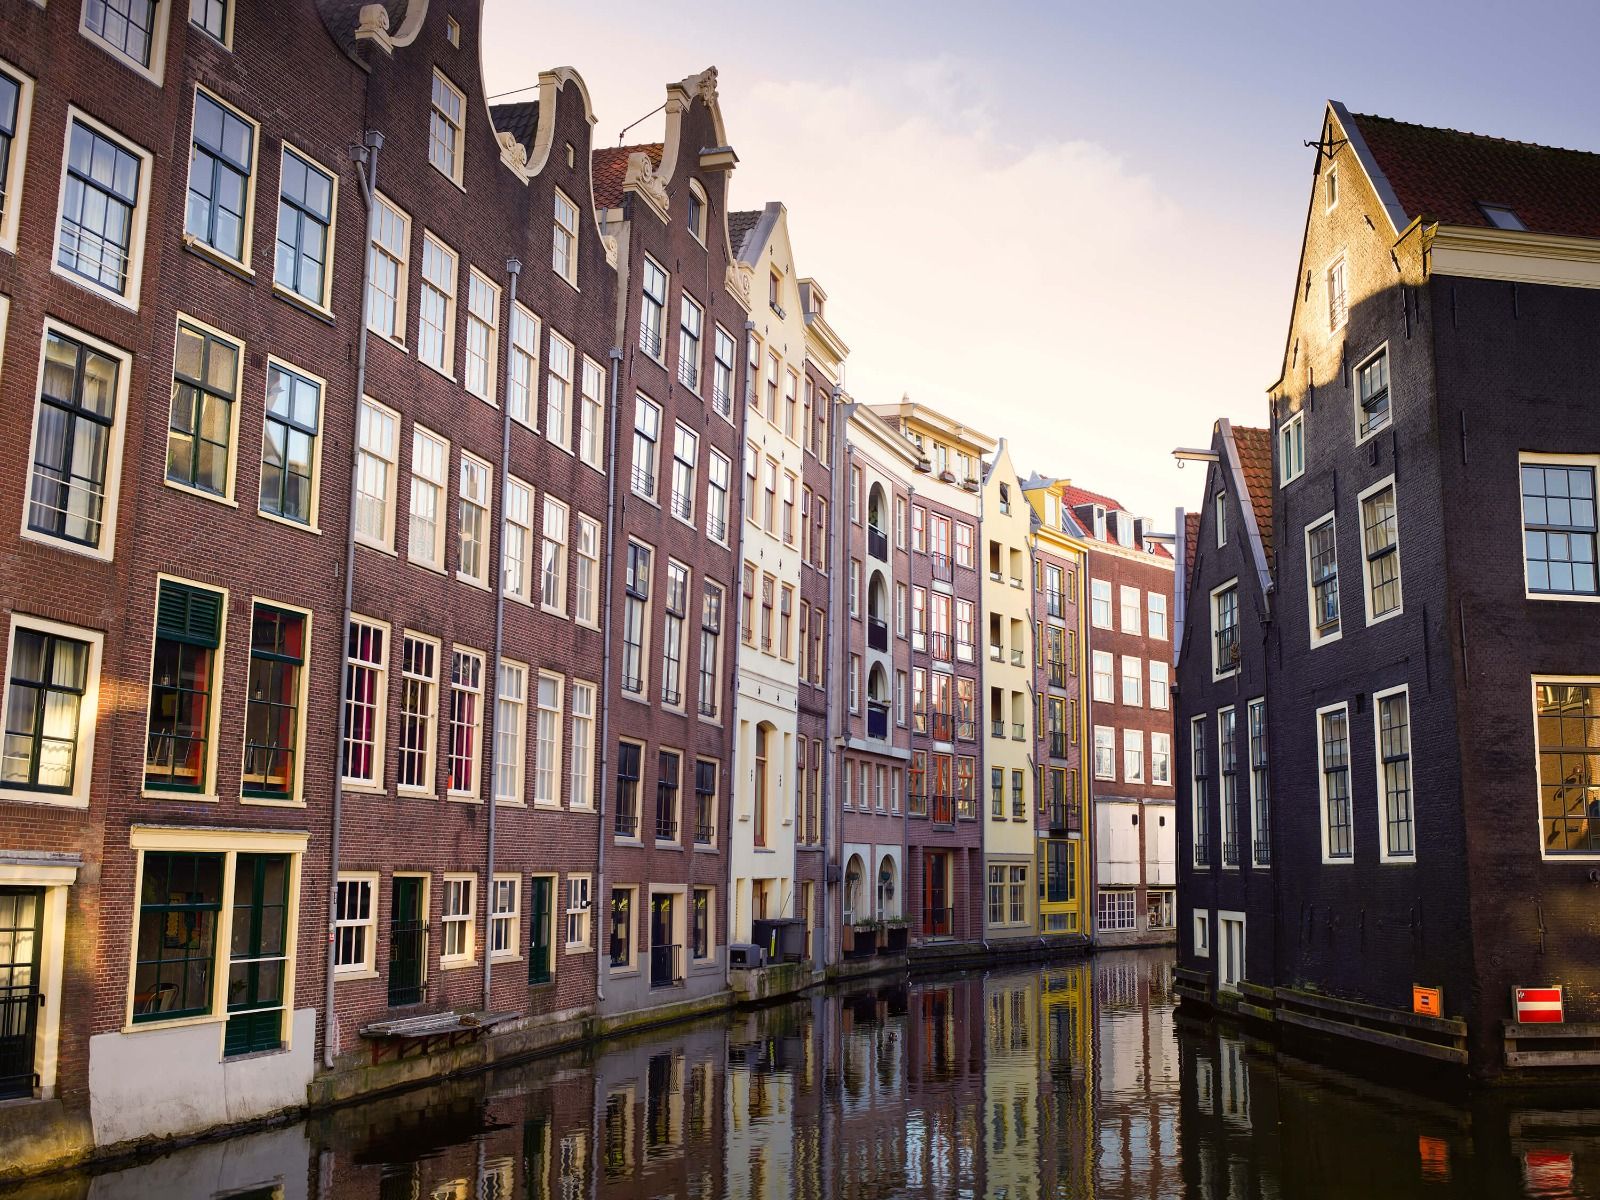 Gebouwen - Amsterdamse huizen aan de gracht - Tienerkamer